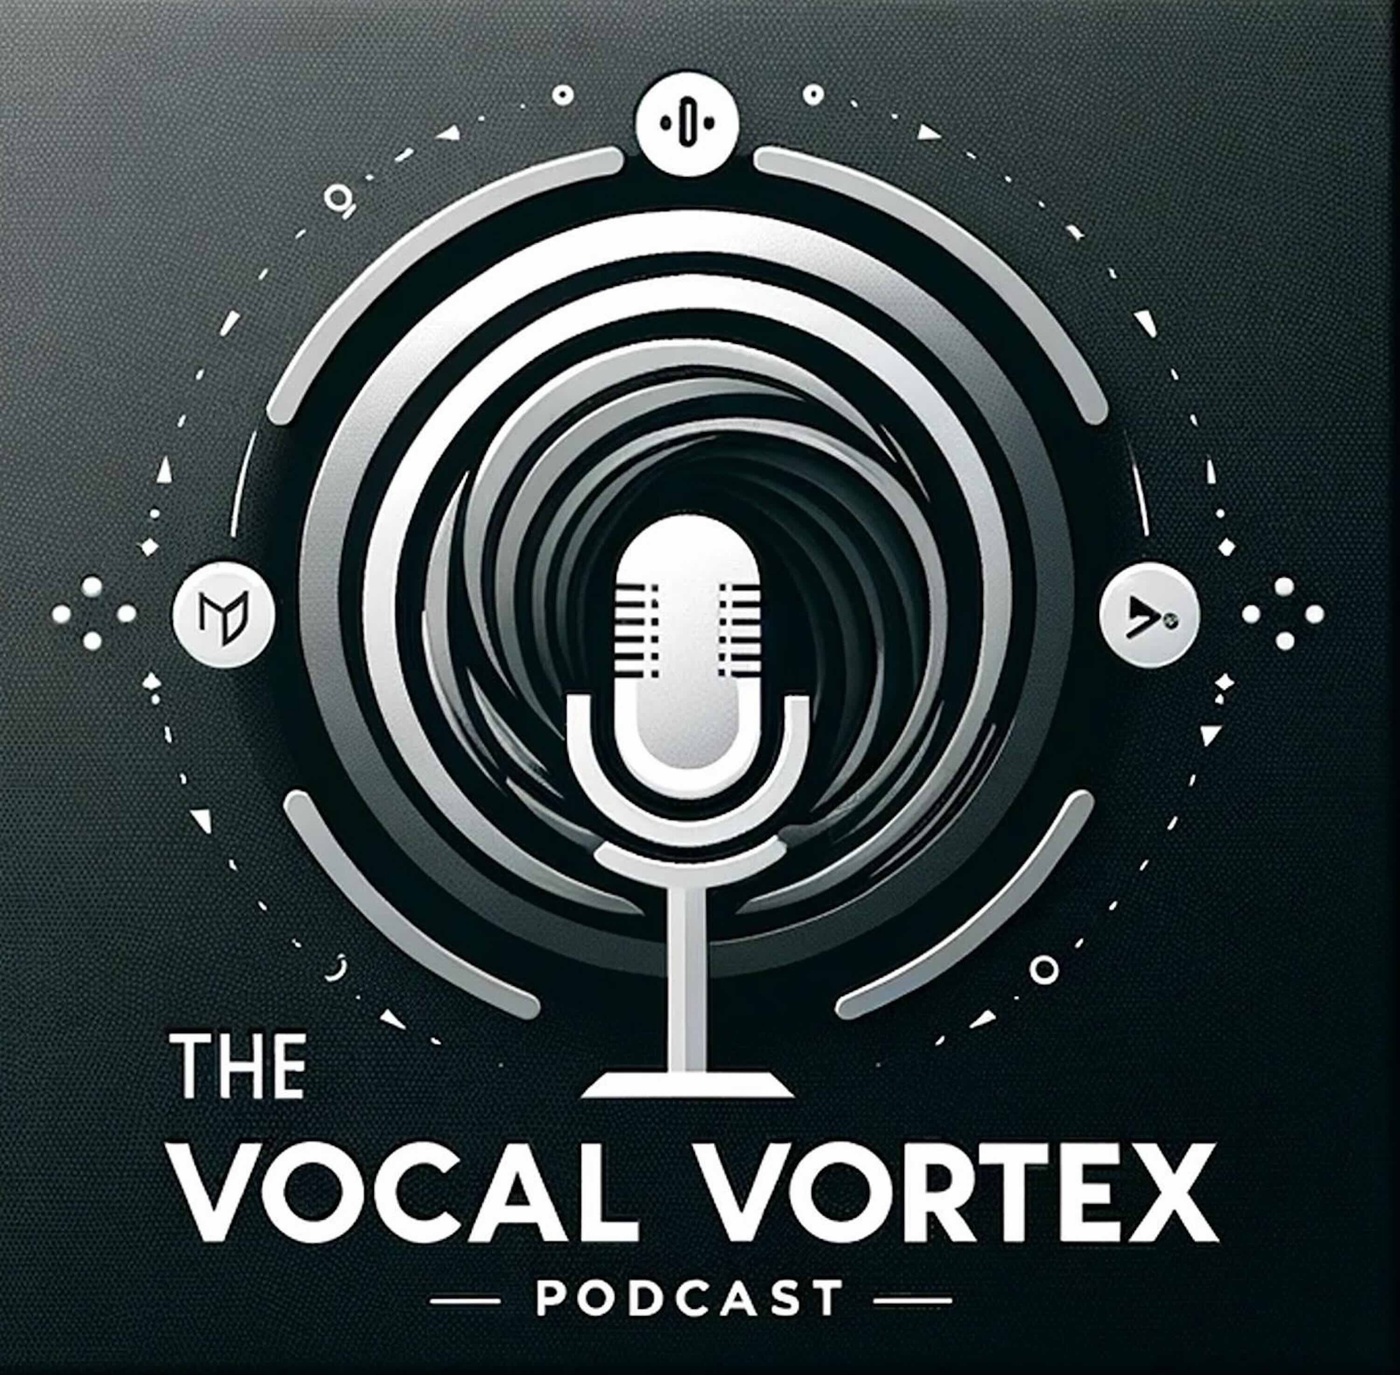 The Vocal Vortex